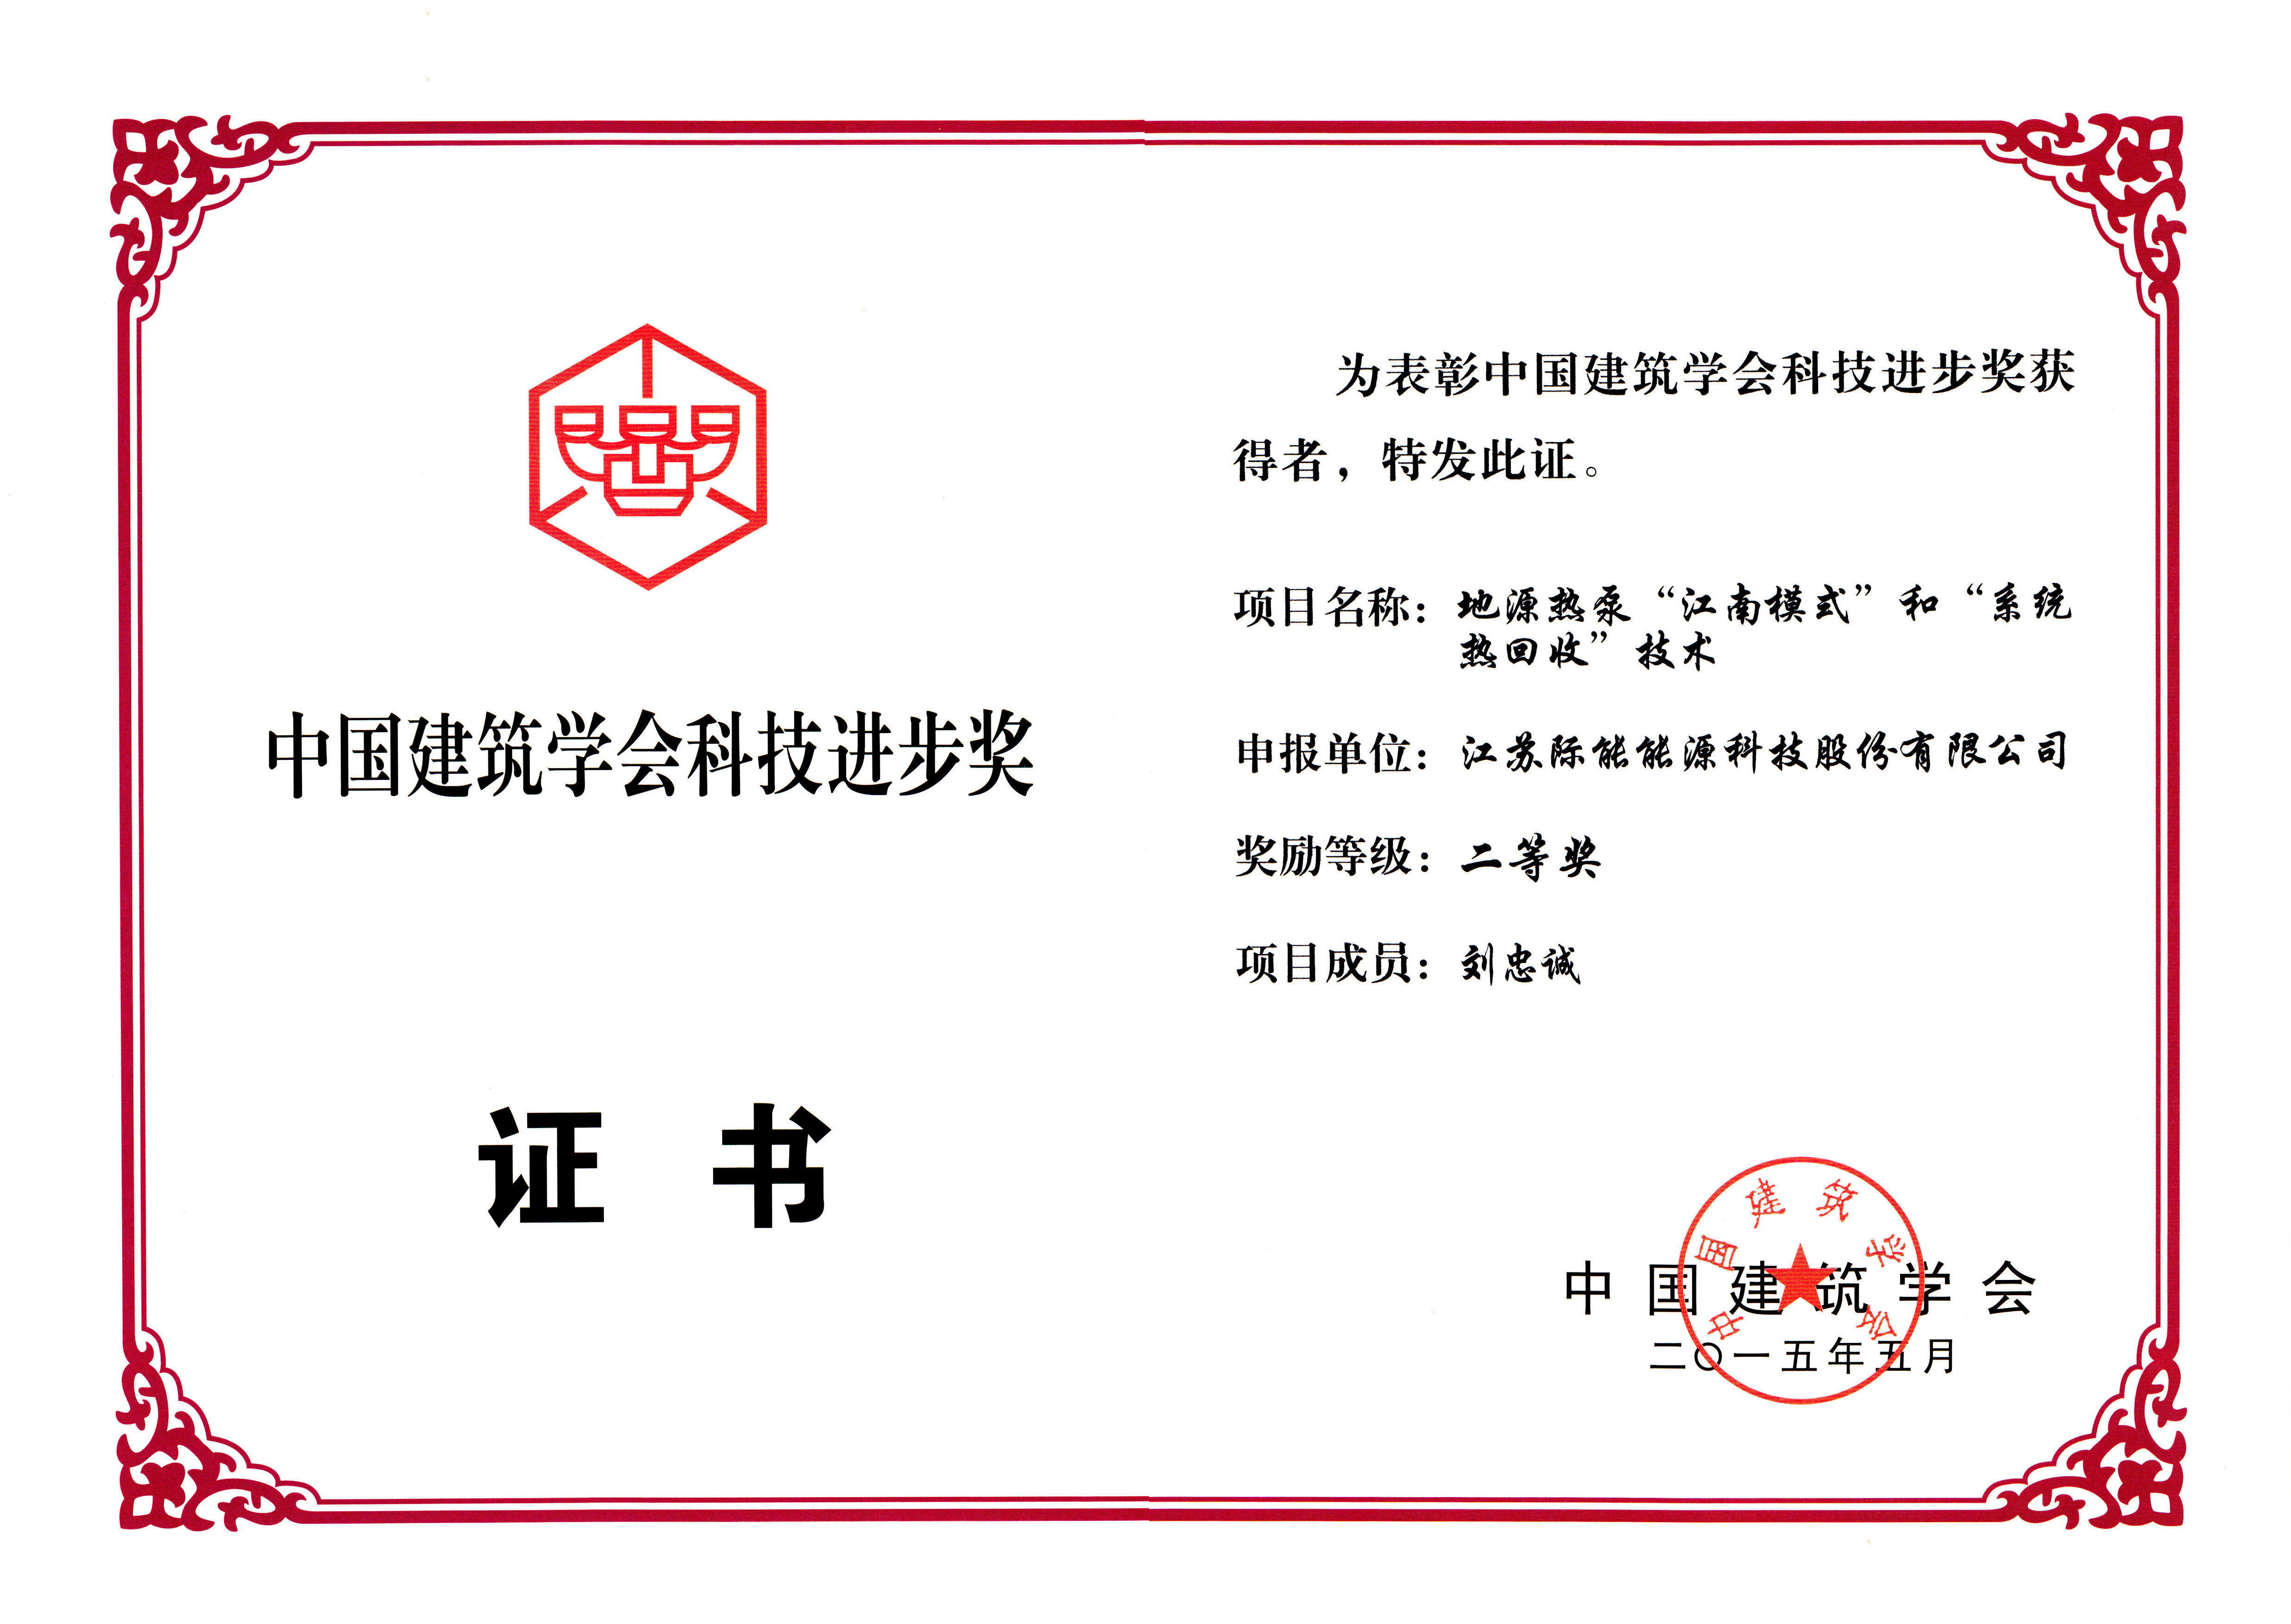 刘忠诚董事长获得2014年中国建筑学会科技进步奖二等奖